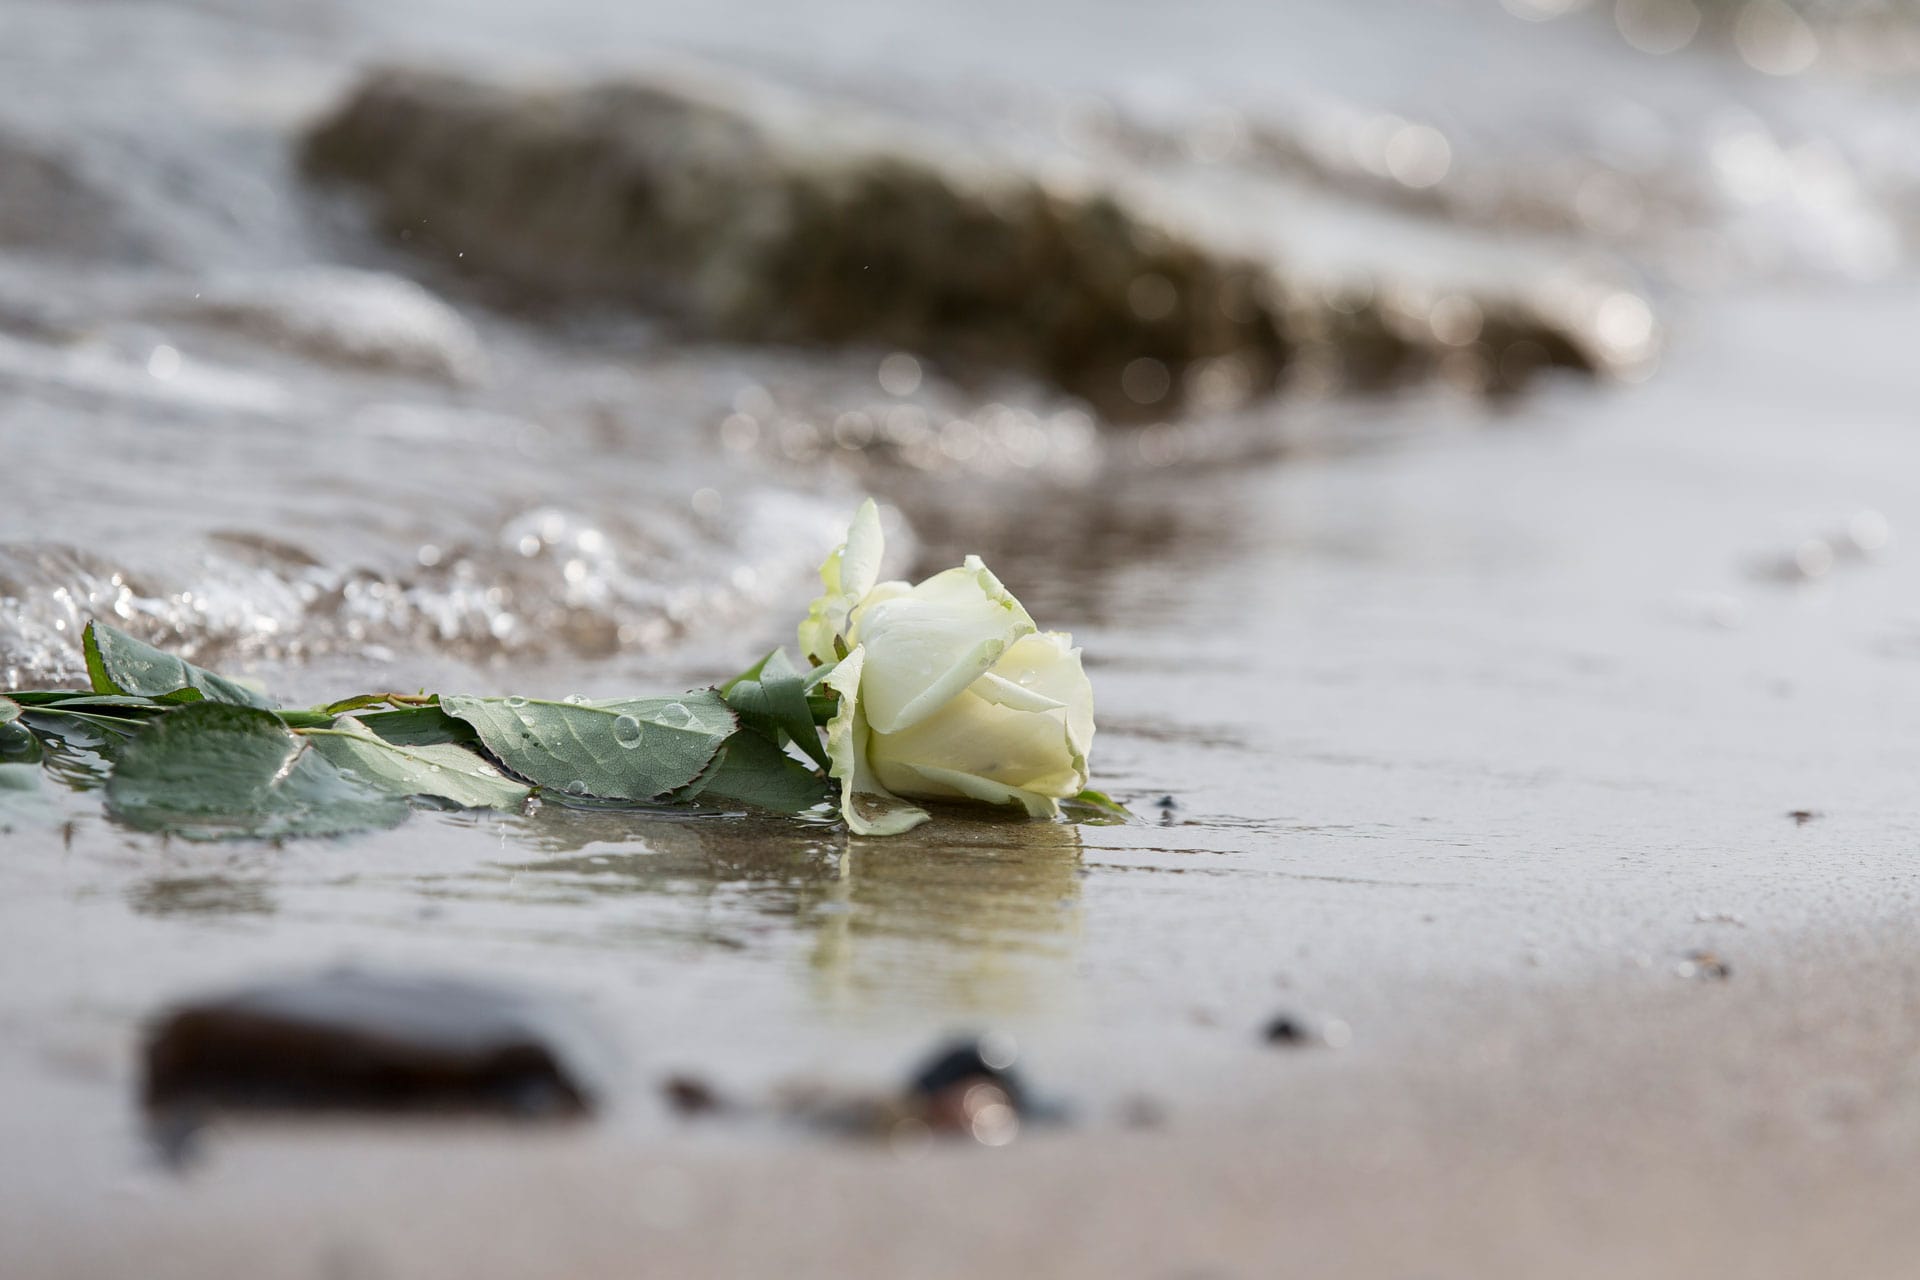 Eine weiße Rose am Strand, von Wasser umspült